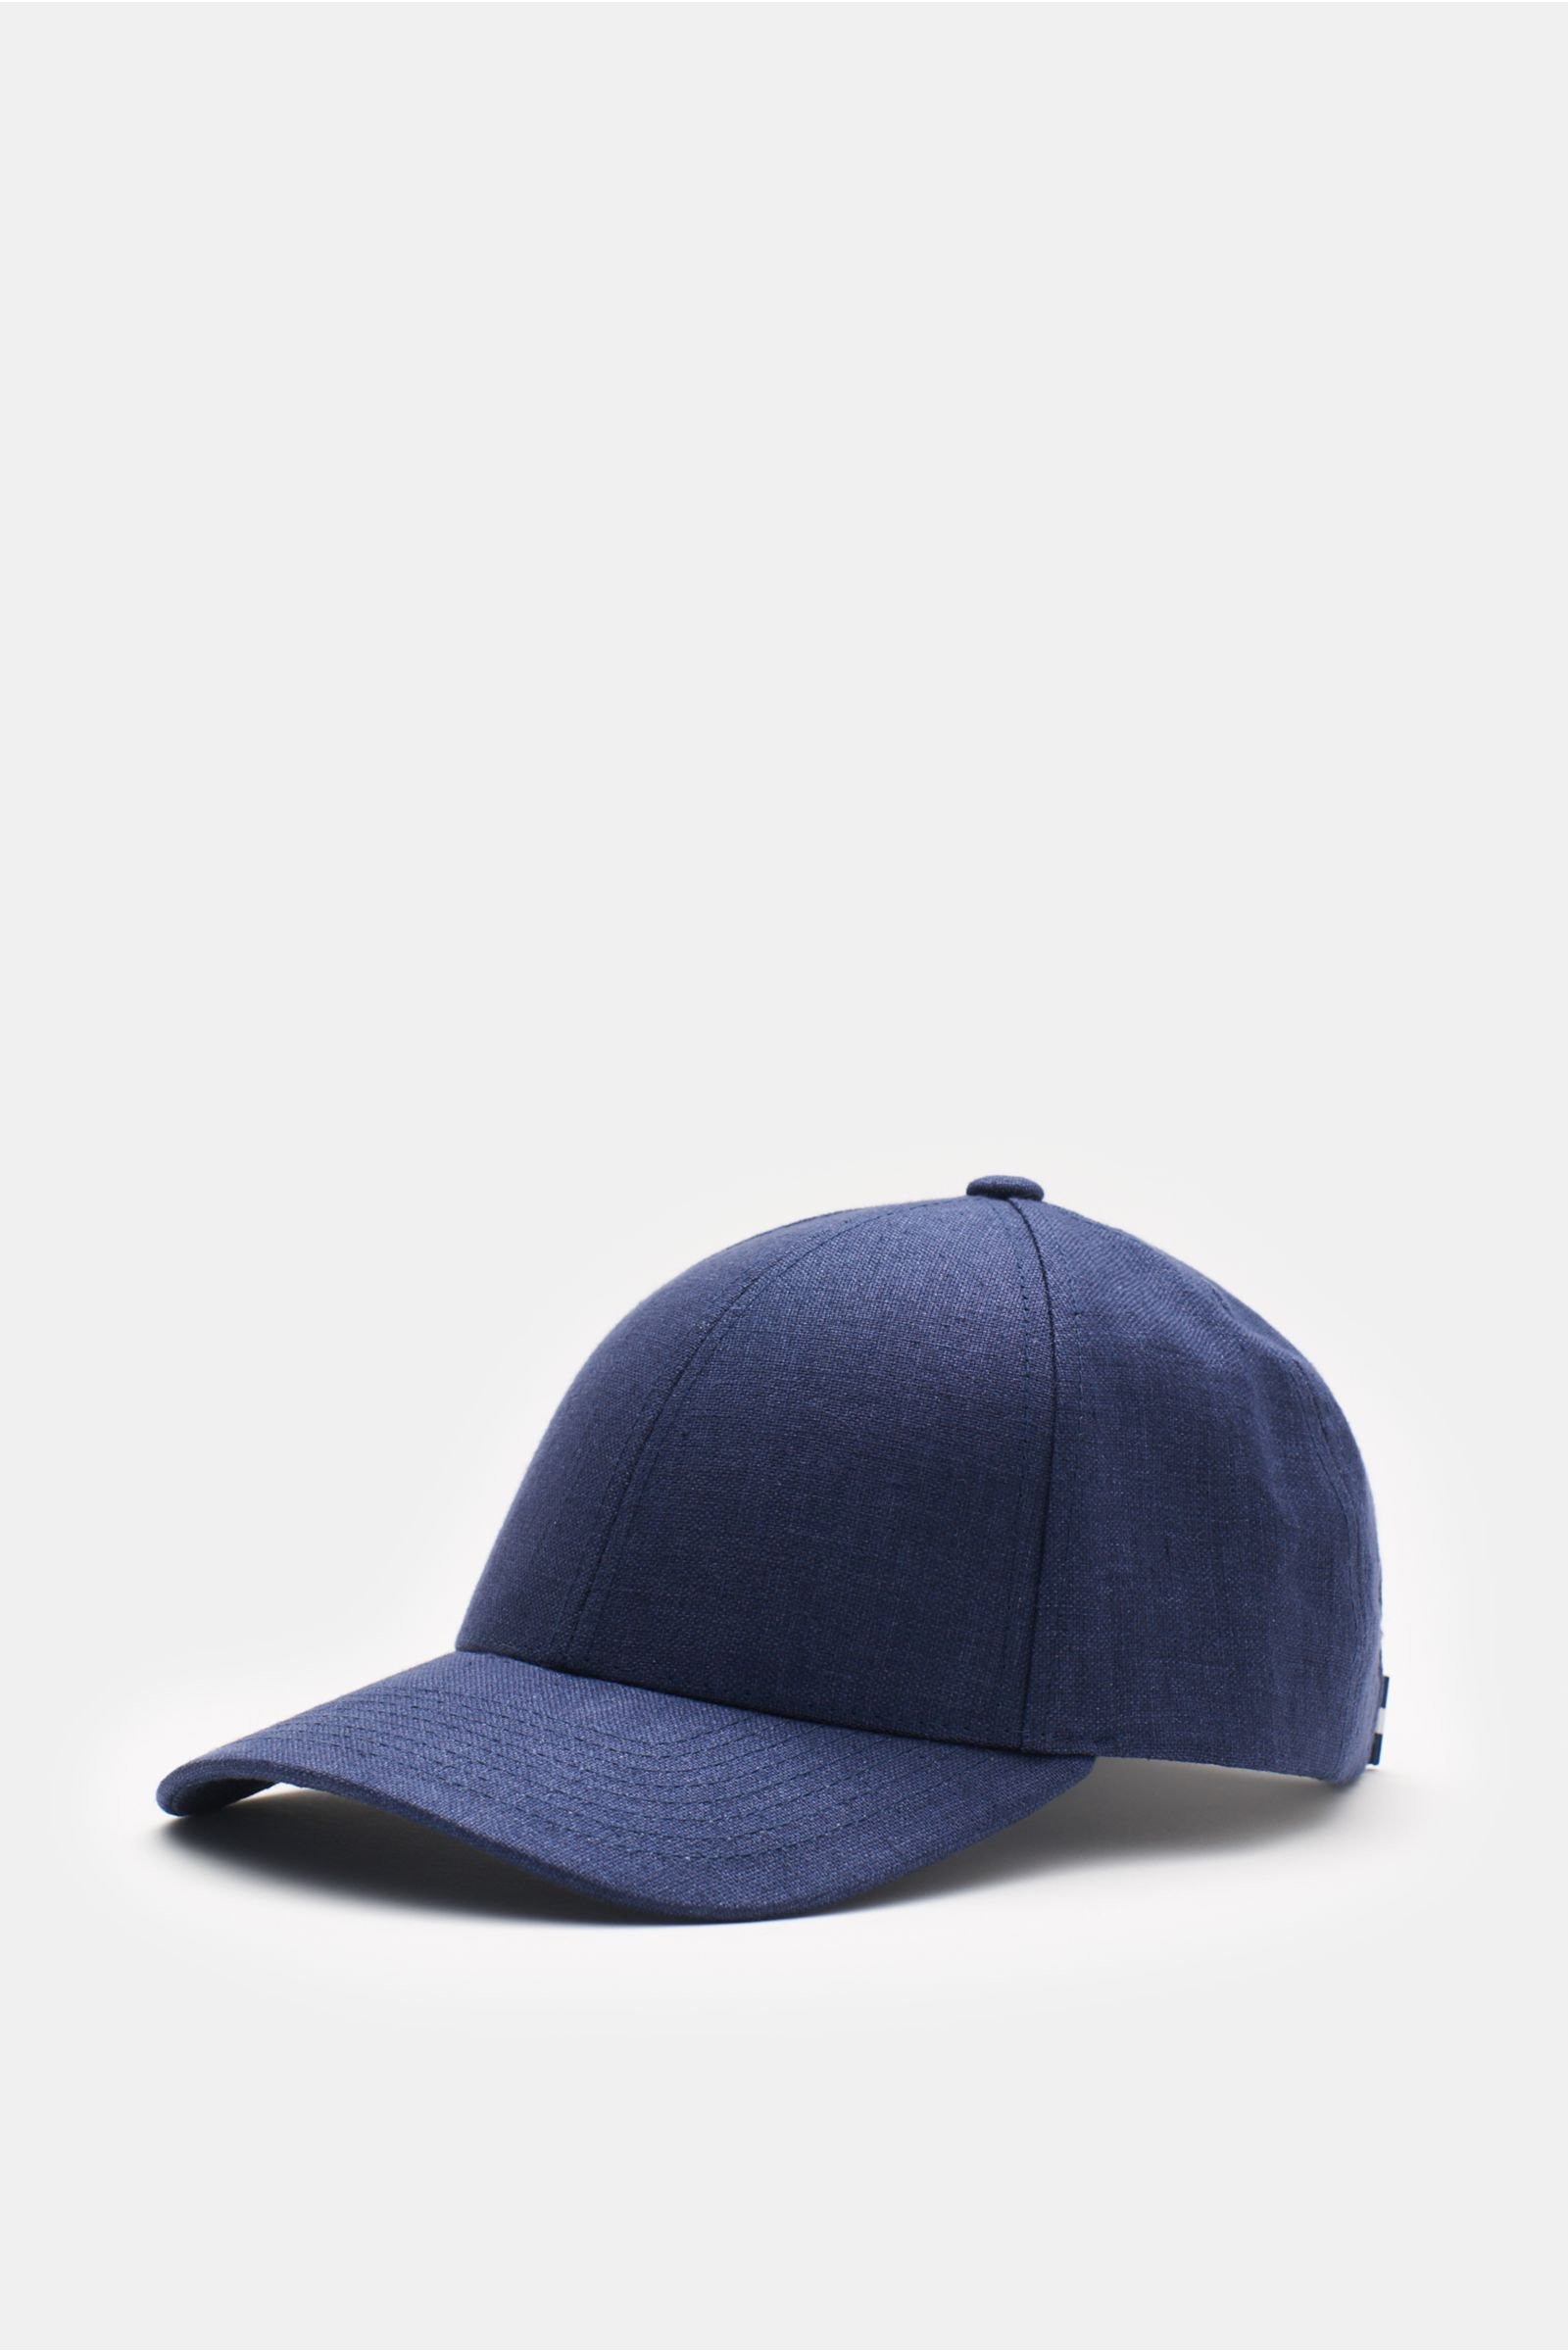 Linen baseball cap dark blue